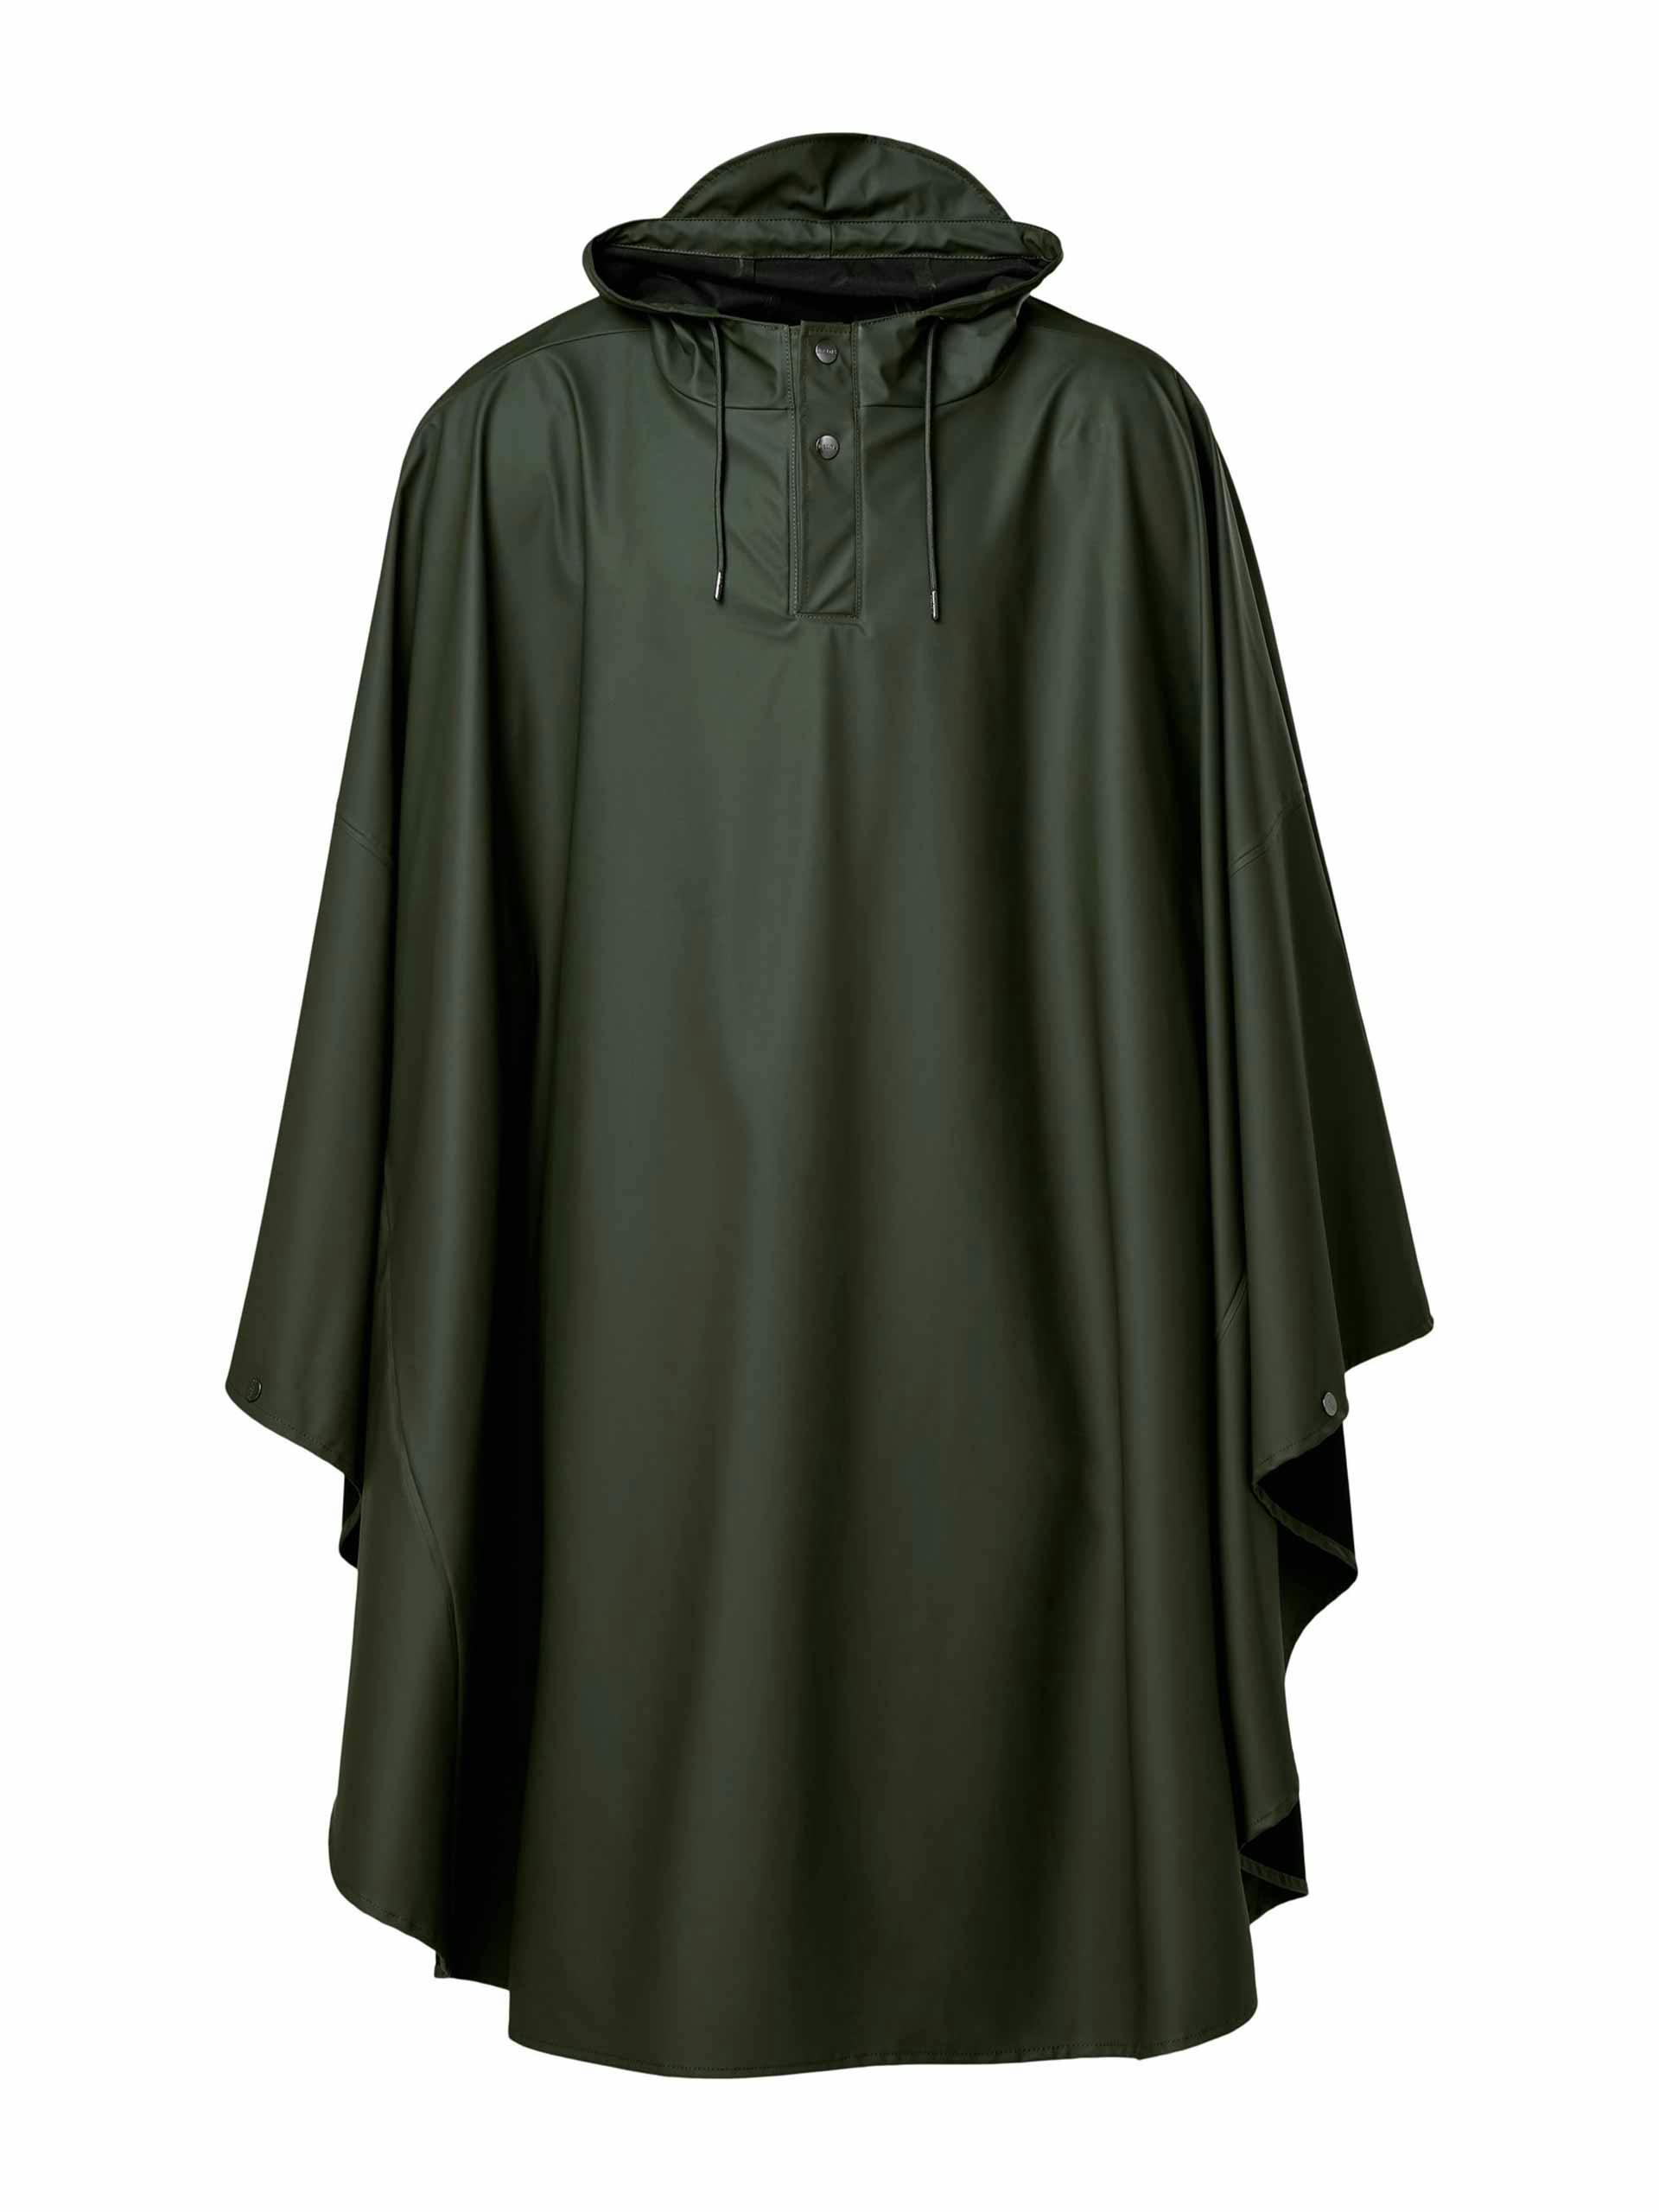 Waterproof green cape